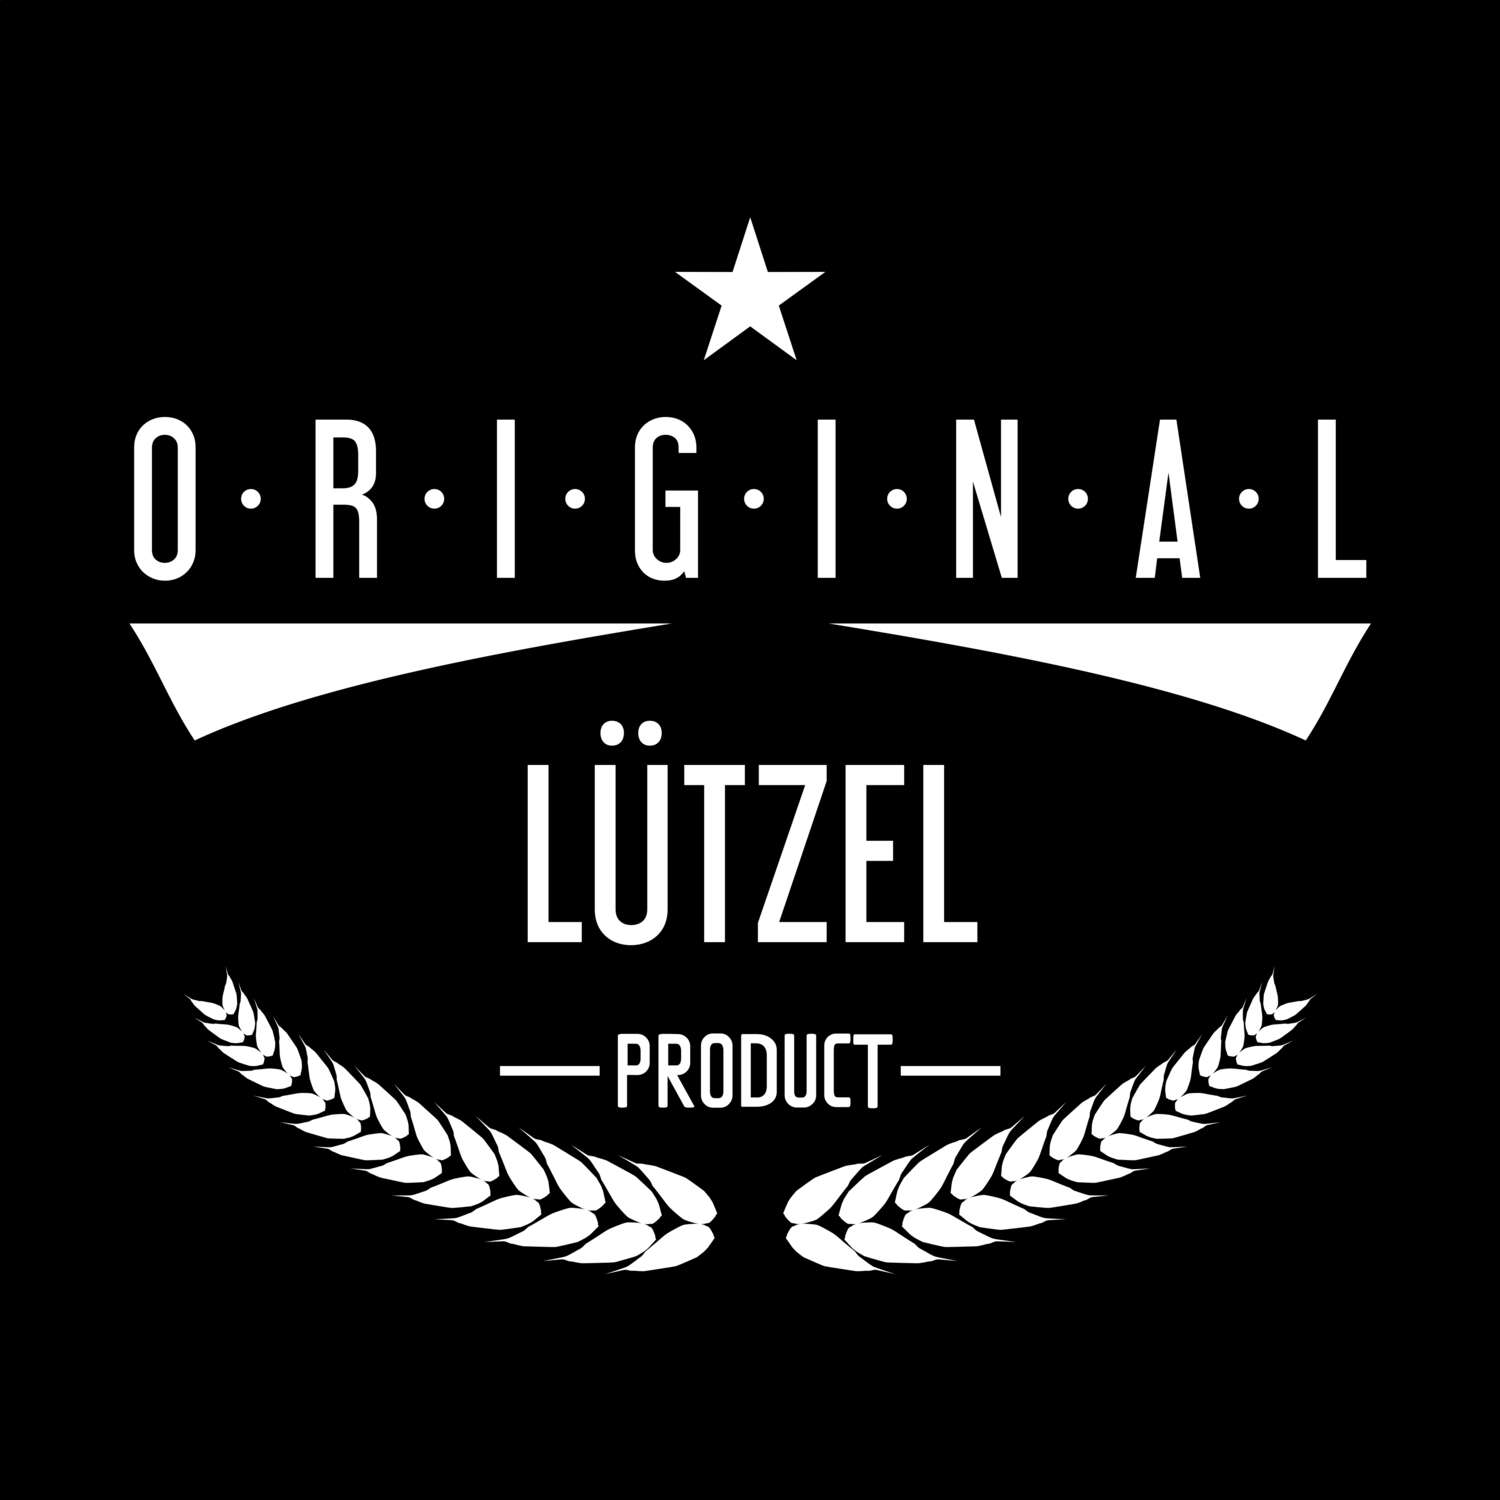 Lützel T-Shirt »Original Product«